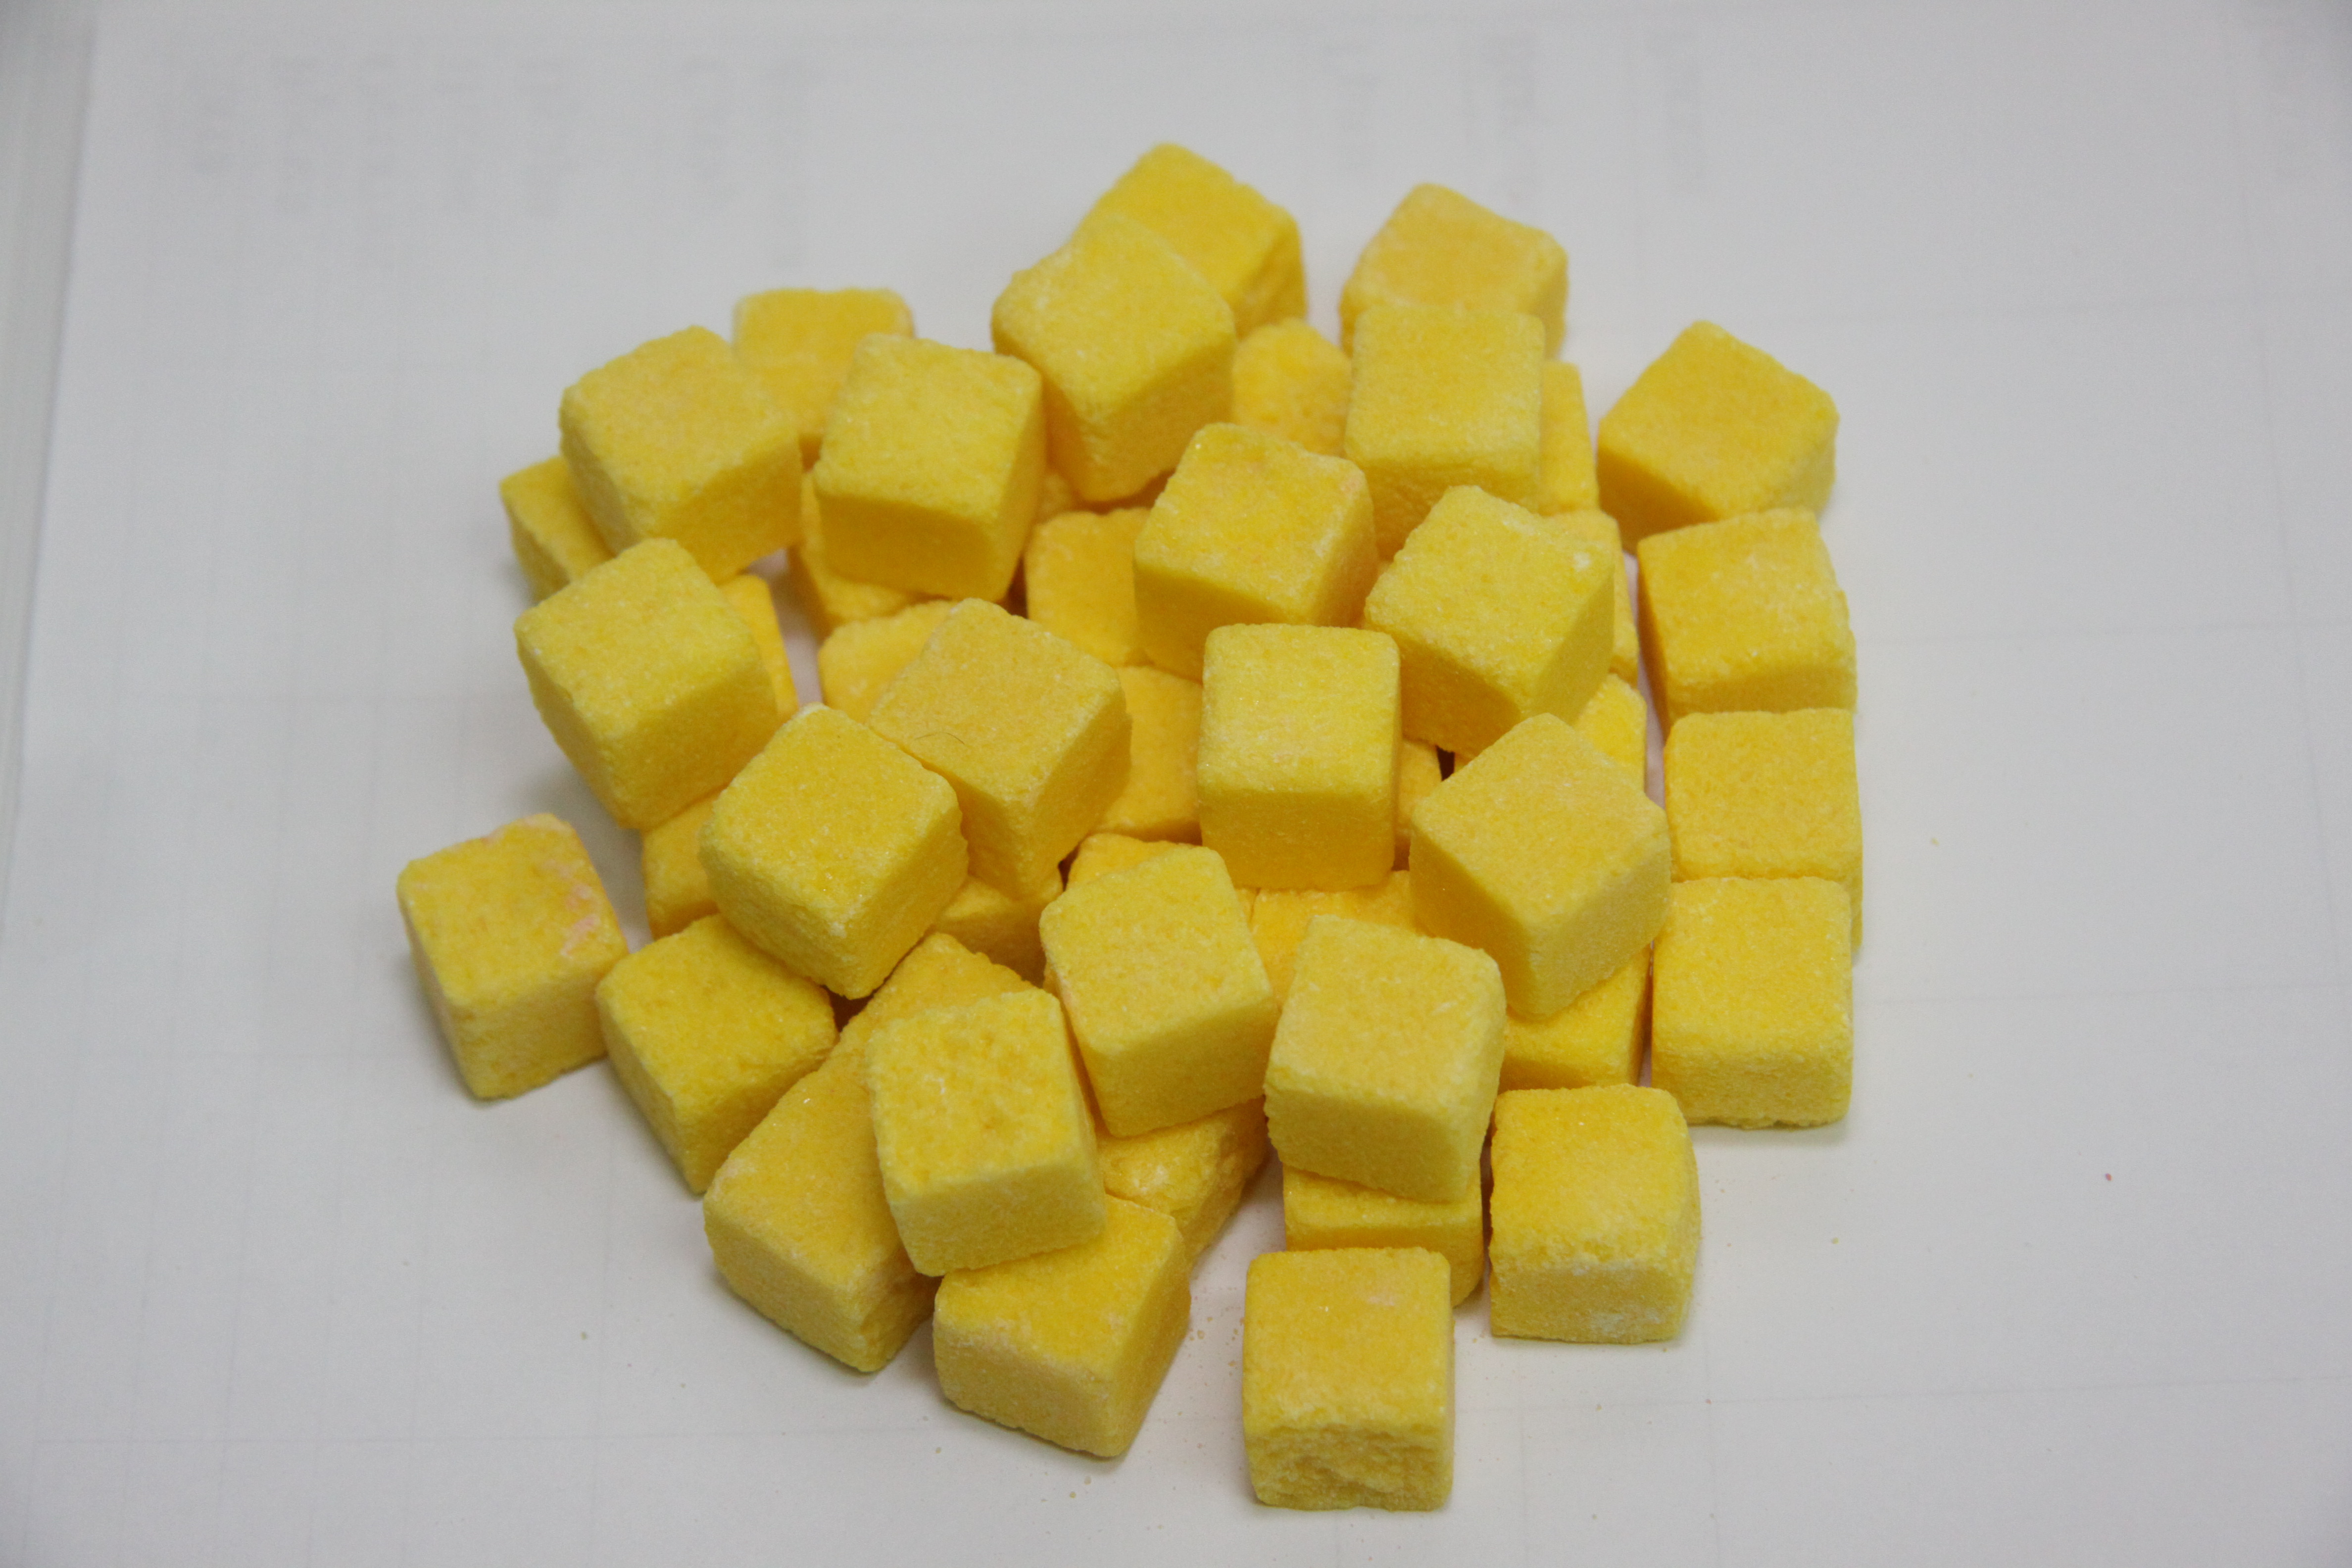 Сладкие кубики "Мишуткина радость" в ассортименте (25 кг) яблоко, лимон, малина, клубника, мята, шоколад, вишня, миндаль